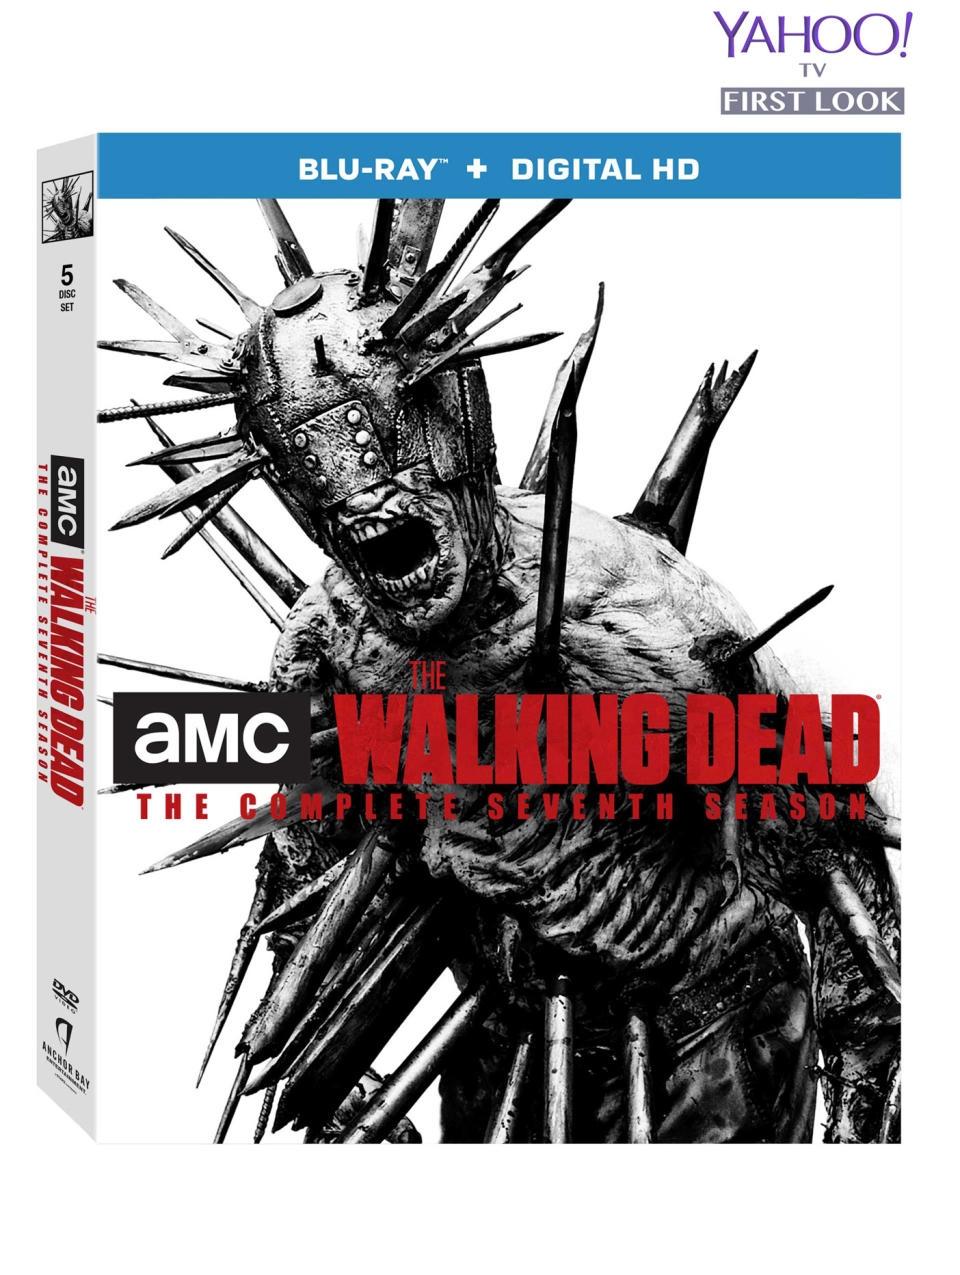 The Walking Dead Season 7 DVD/Blu-Ray